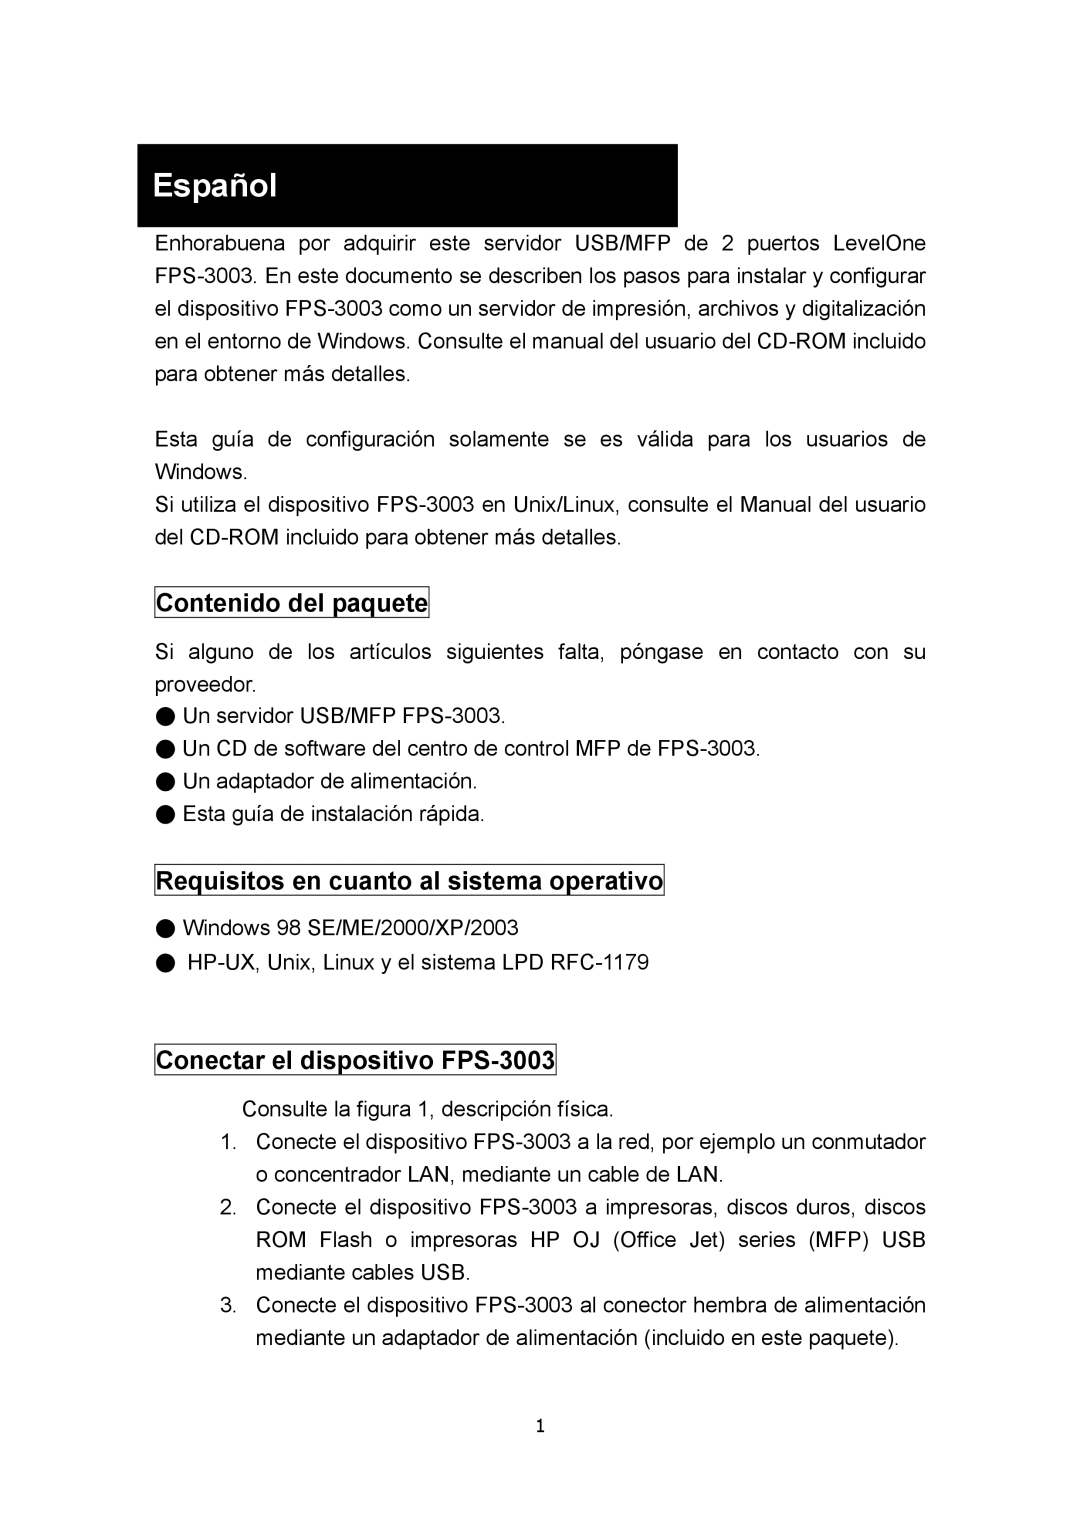 LevelOne FPS-3003 manual Español, Contenido del paquete, Requisitos en cuanto al sistema operativo 